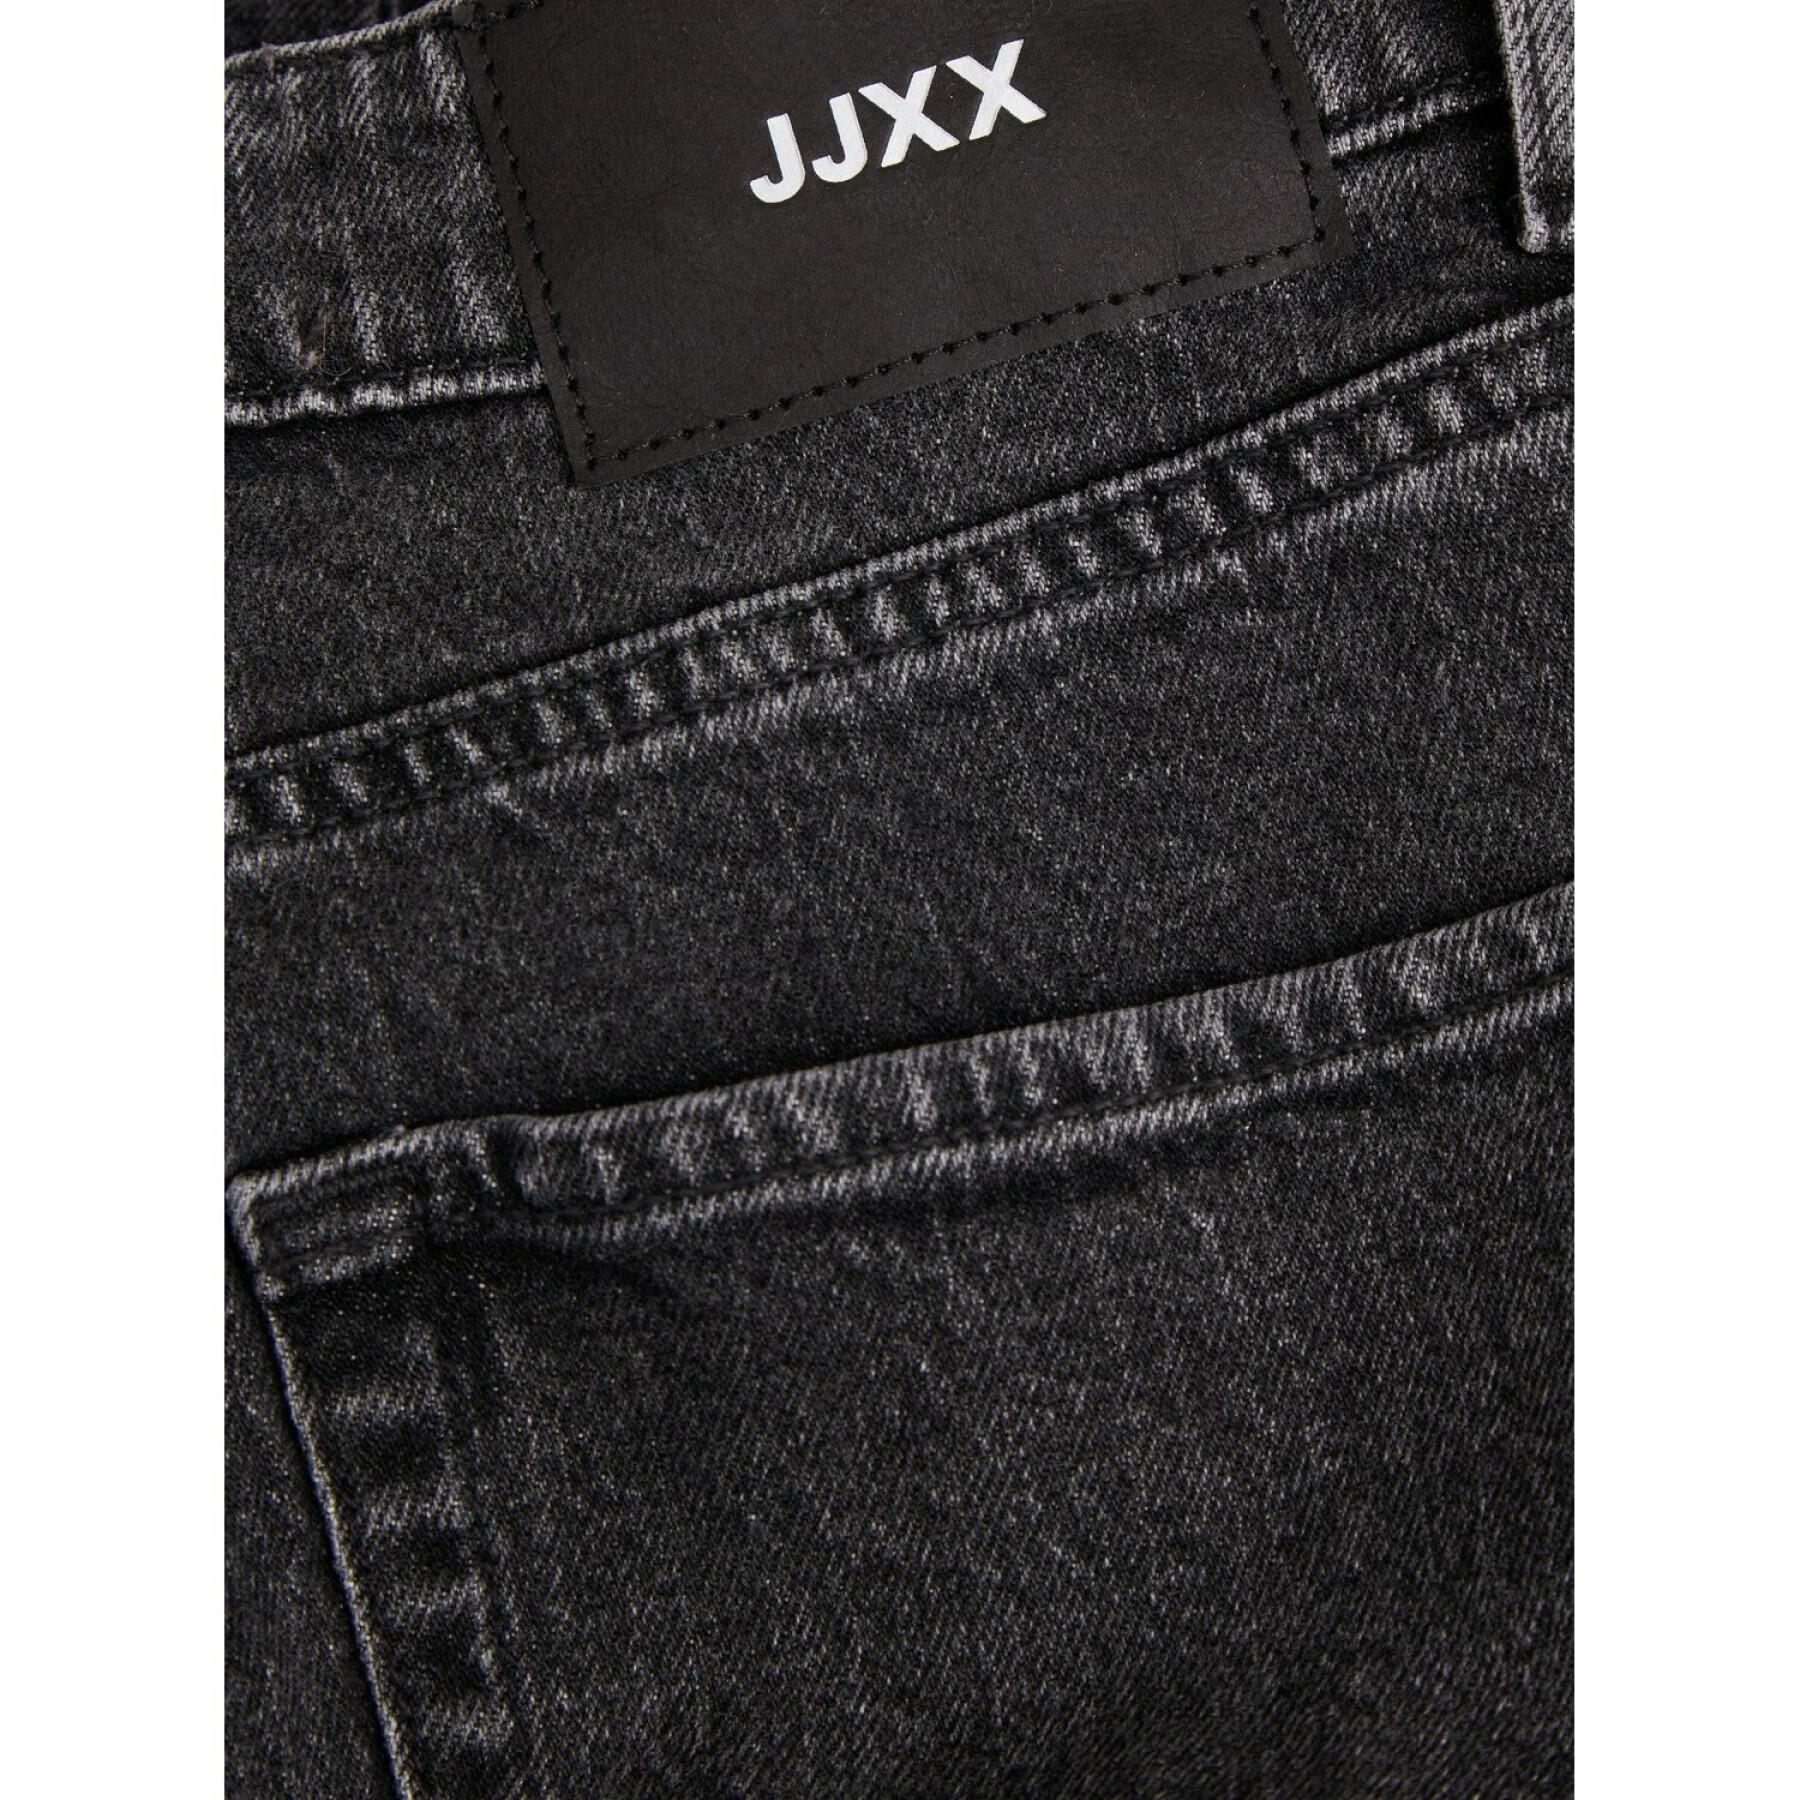 Jeans femme JJXX lisbon mom cc4004